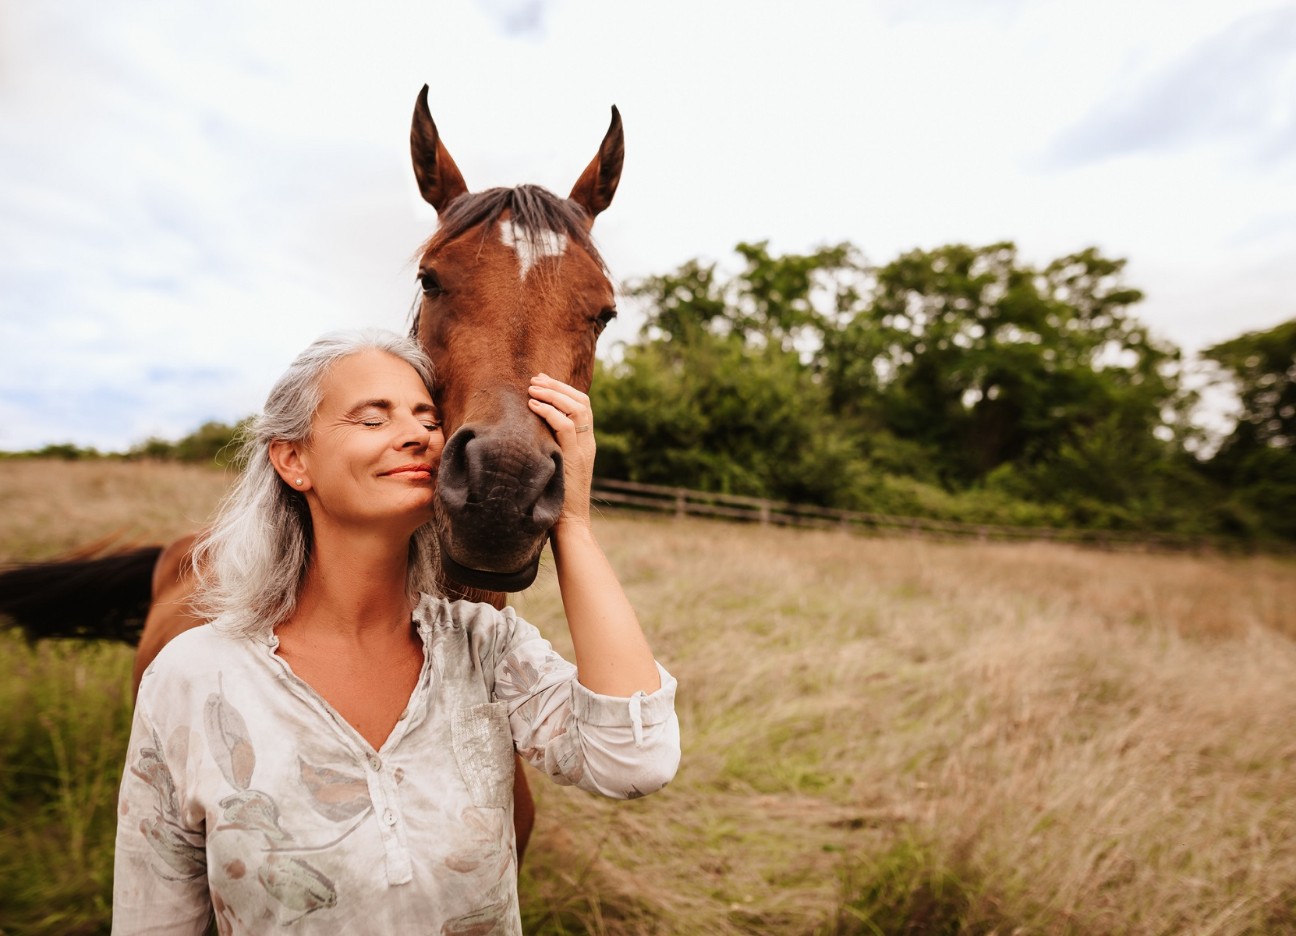 Frau mit heller Bluse lehnt sich an den Kopf eines braunen Pferdes